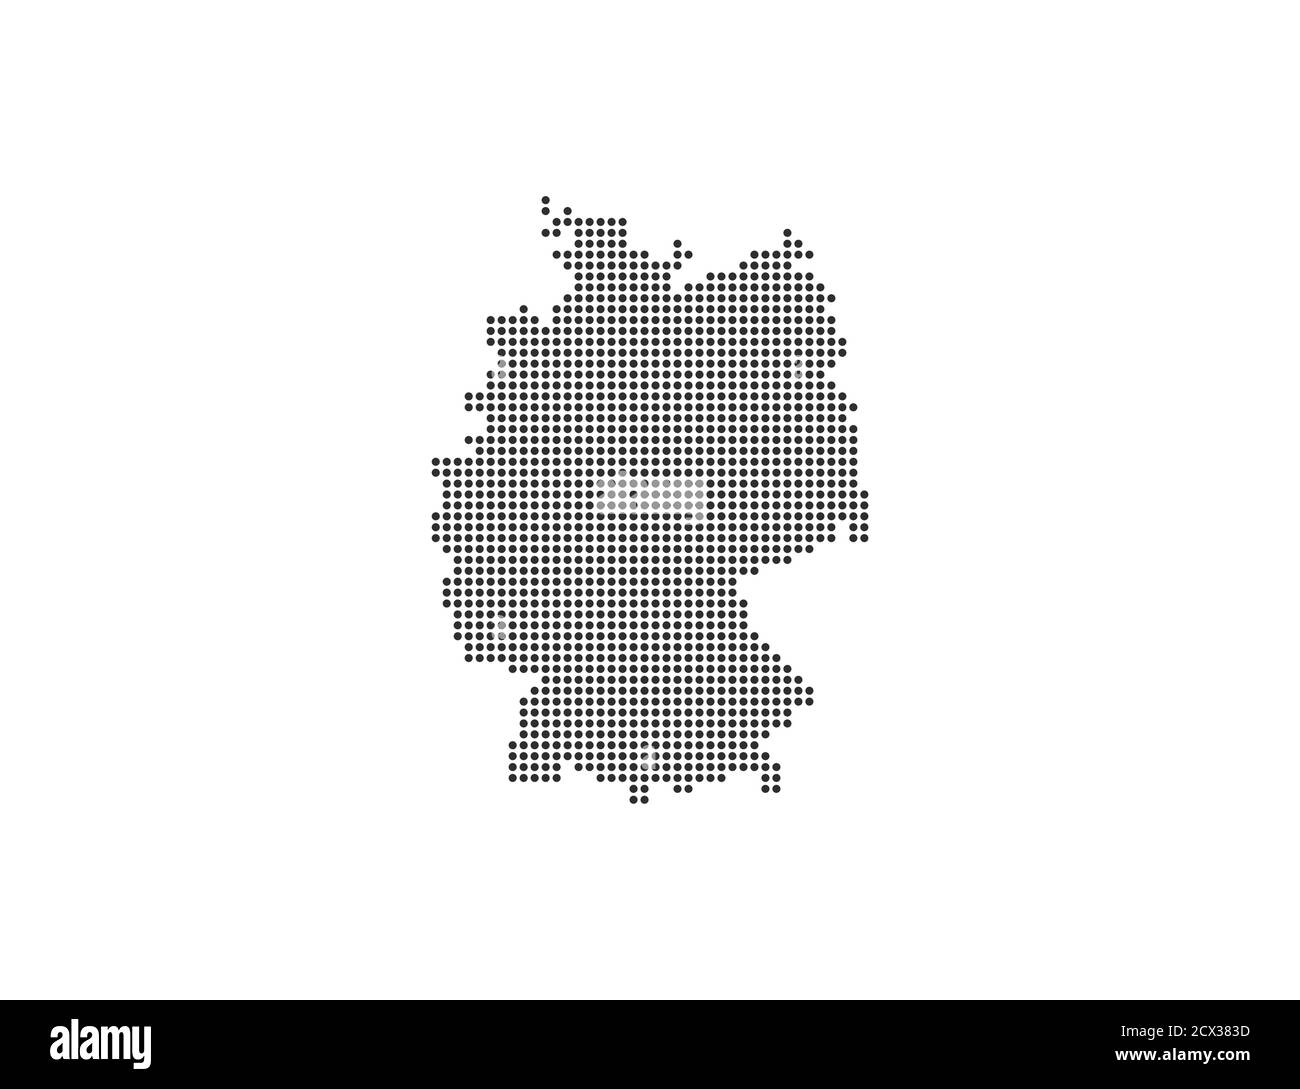 Alemania, país, mapa punteado sobre fondo blanco. Ilustración vectorial. Ilustración del Vector